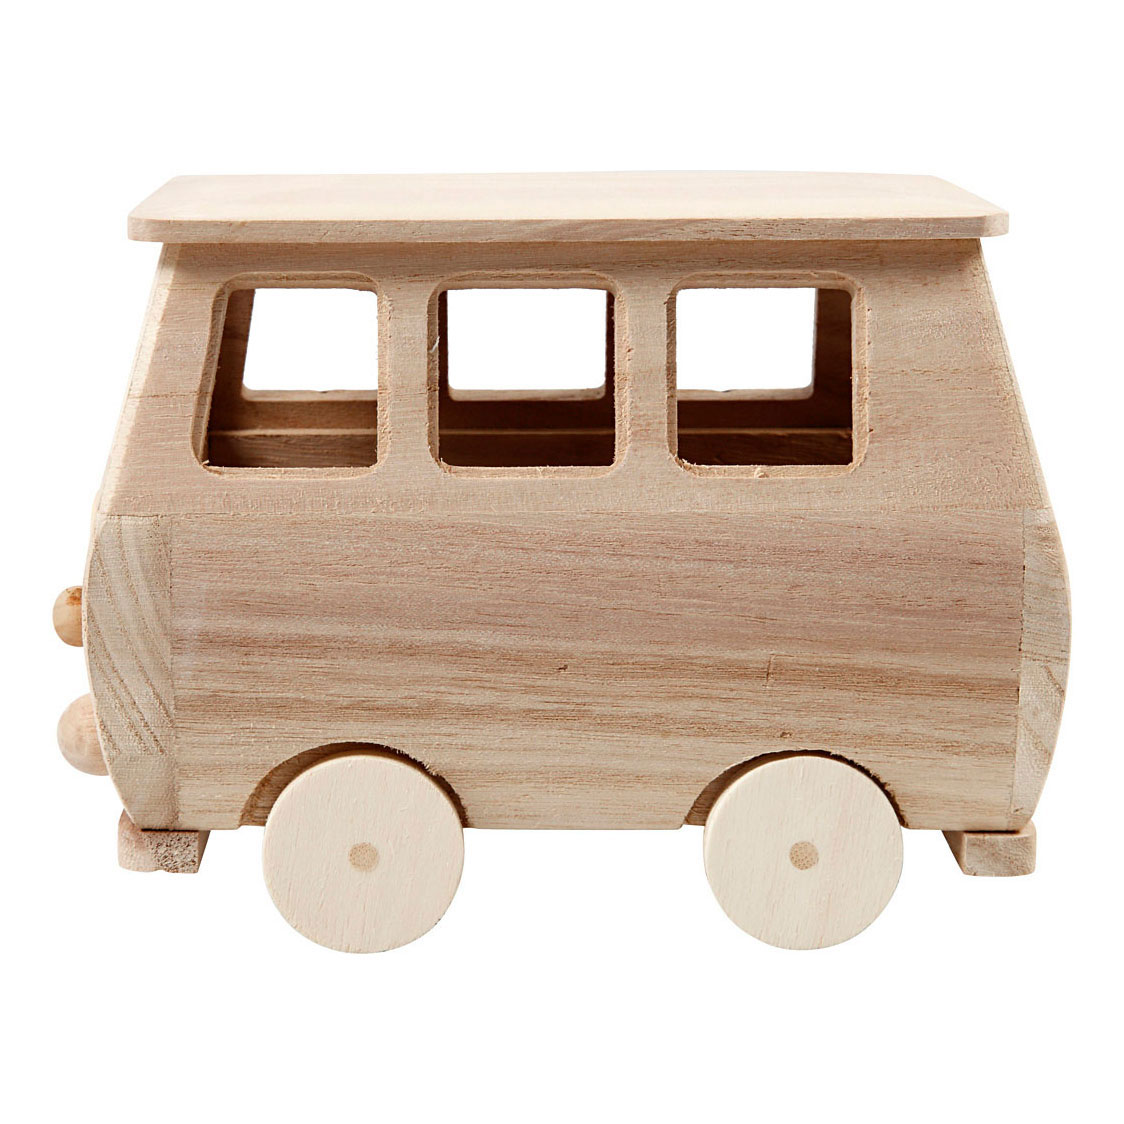 Minibus en bois, 17x10x13cm